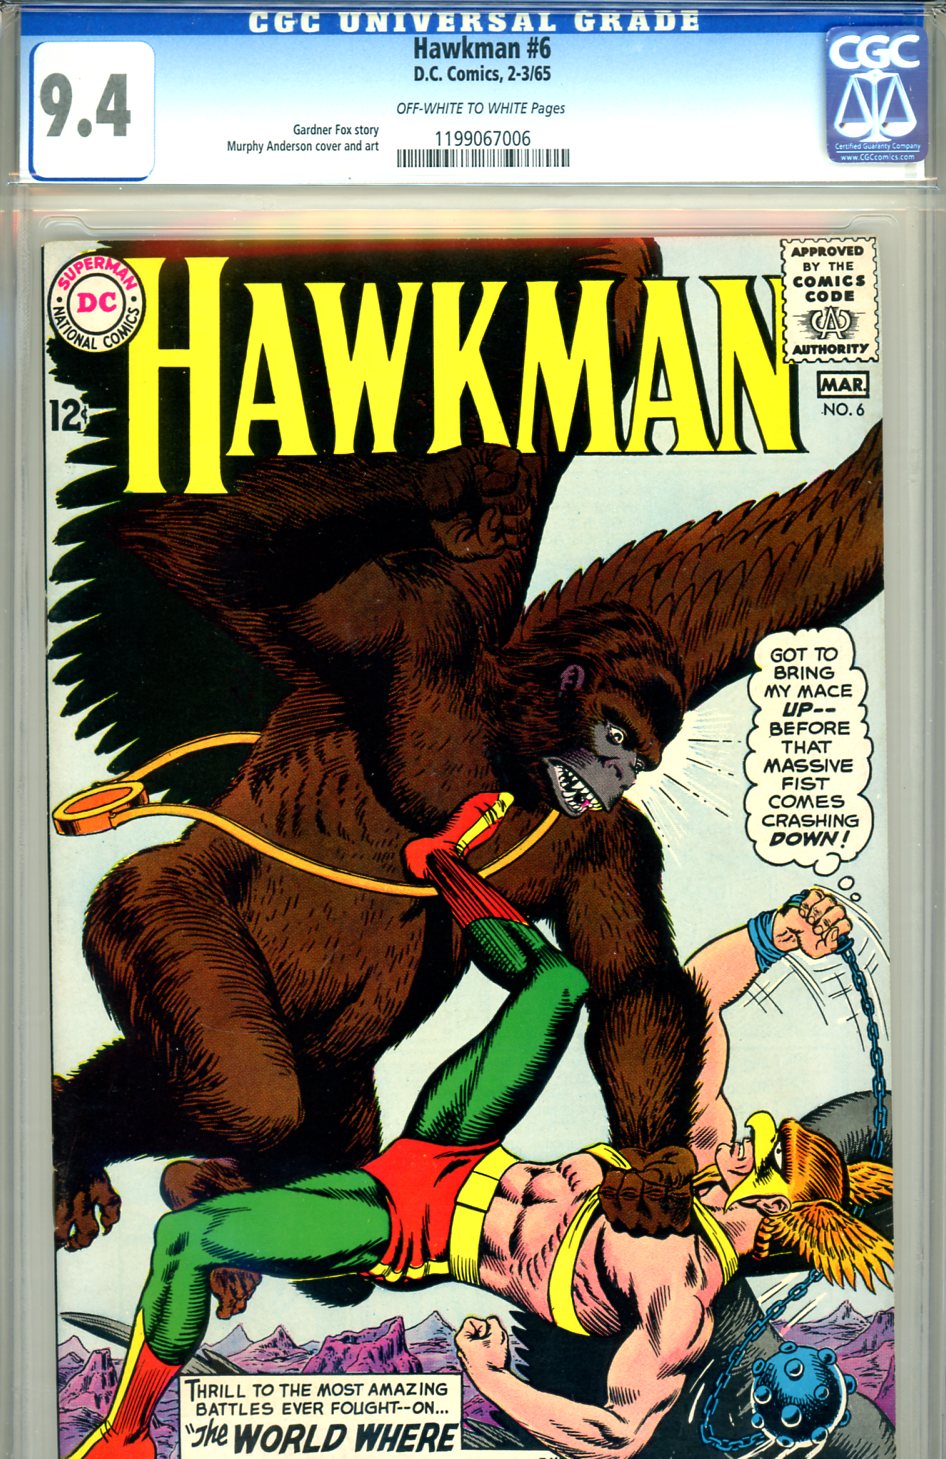 Hawkman #6 CGC 9.4 ow/w